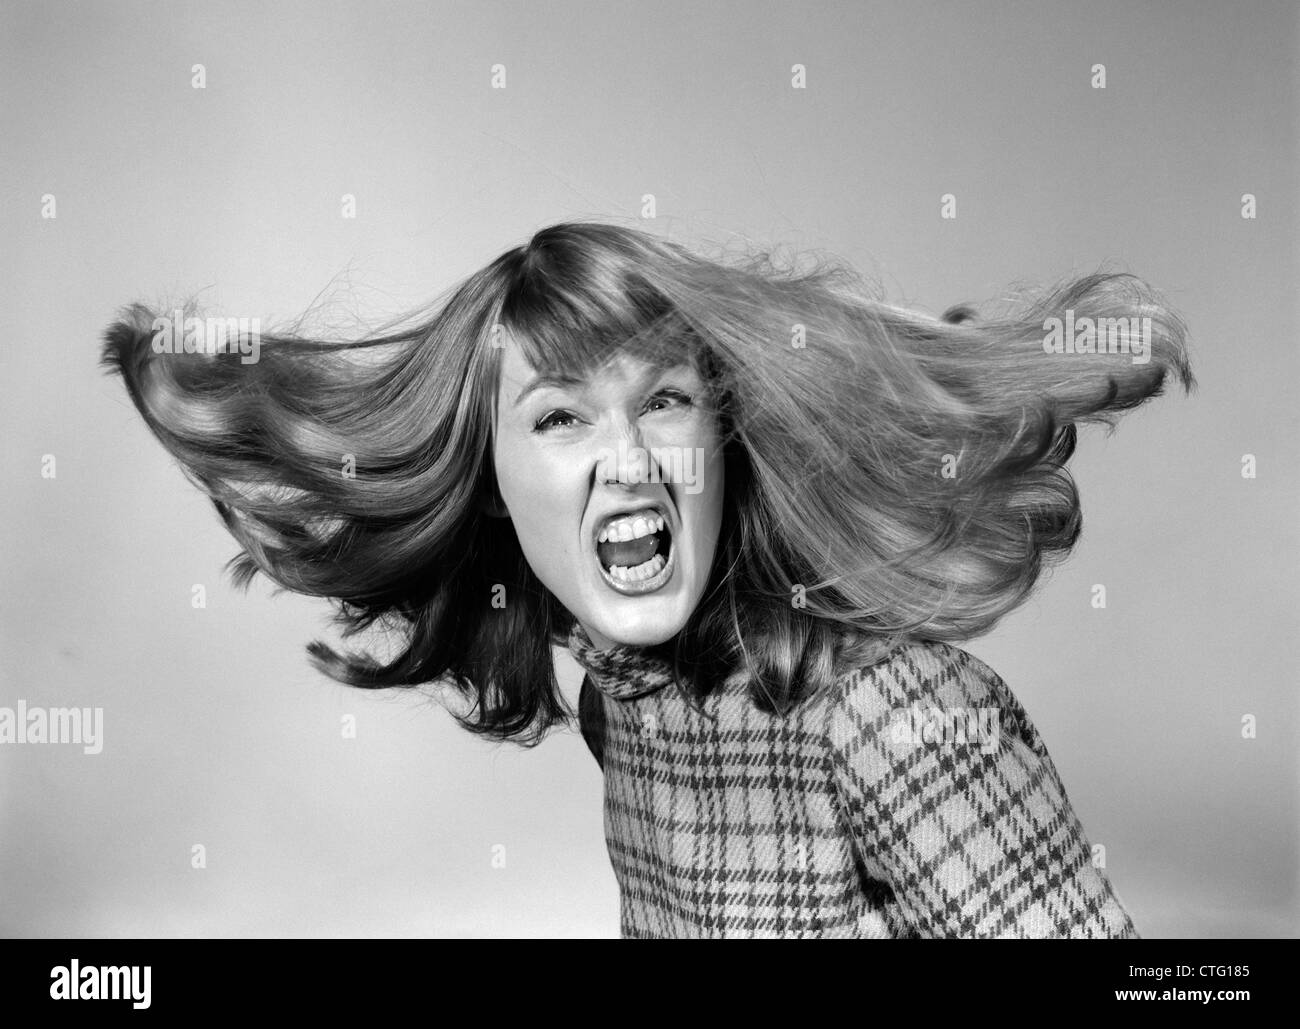 1960s ANGRY WOMAN YELLING GNASHING TEETH HAIR FLYING LOOKING AT CAMERA Stock Photo